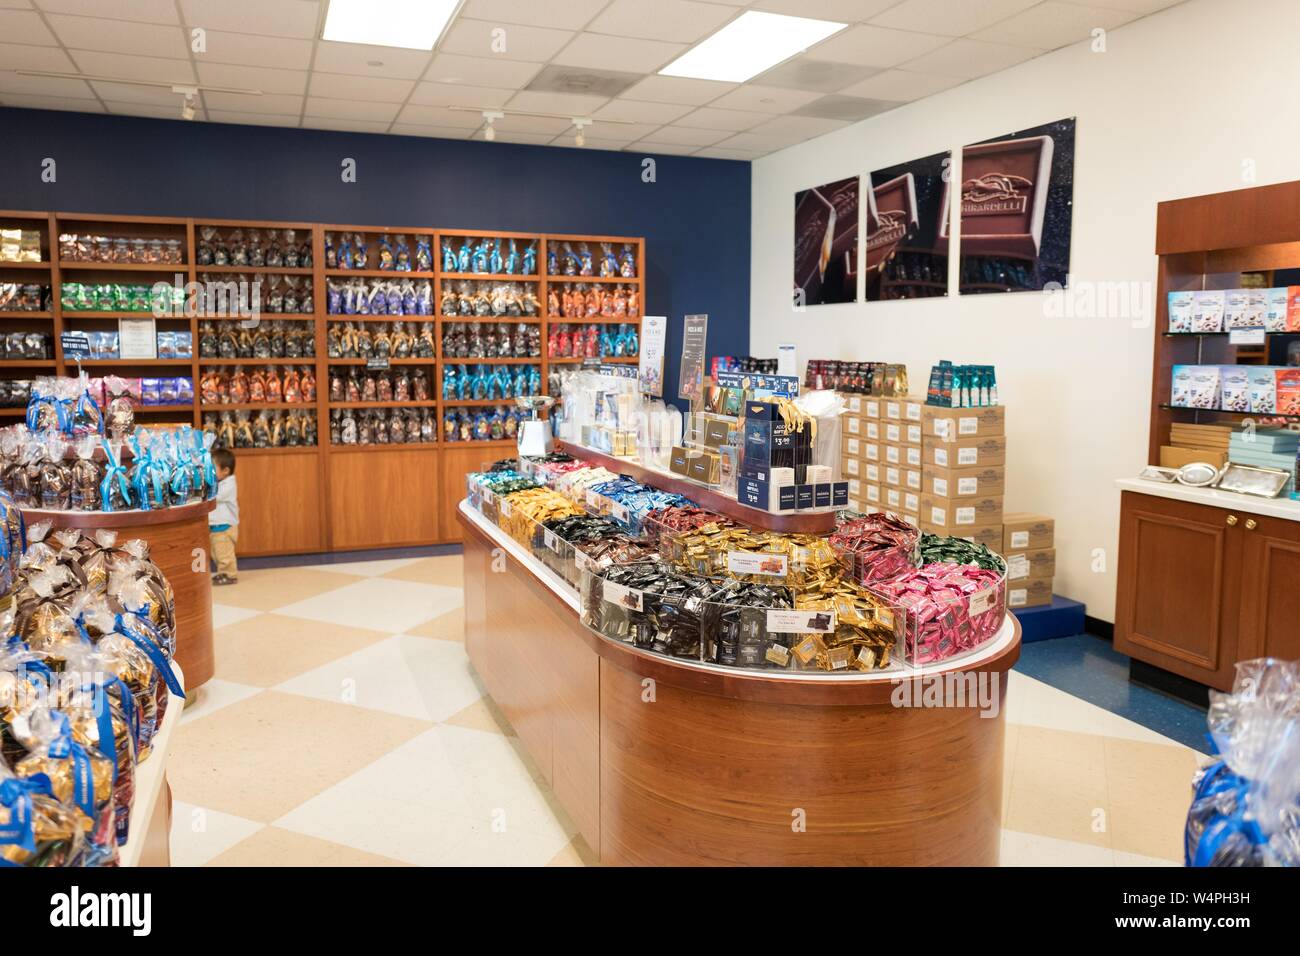 Innenraum der factory store für ikonische San Francisco gourmet Chocolate Company Ghirardelli im Werk und Hauptsitz in San Leandro, Kalifornien, 10. September 2018. () Stockfoto